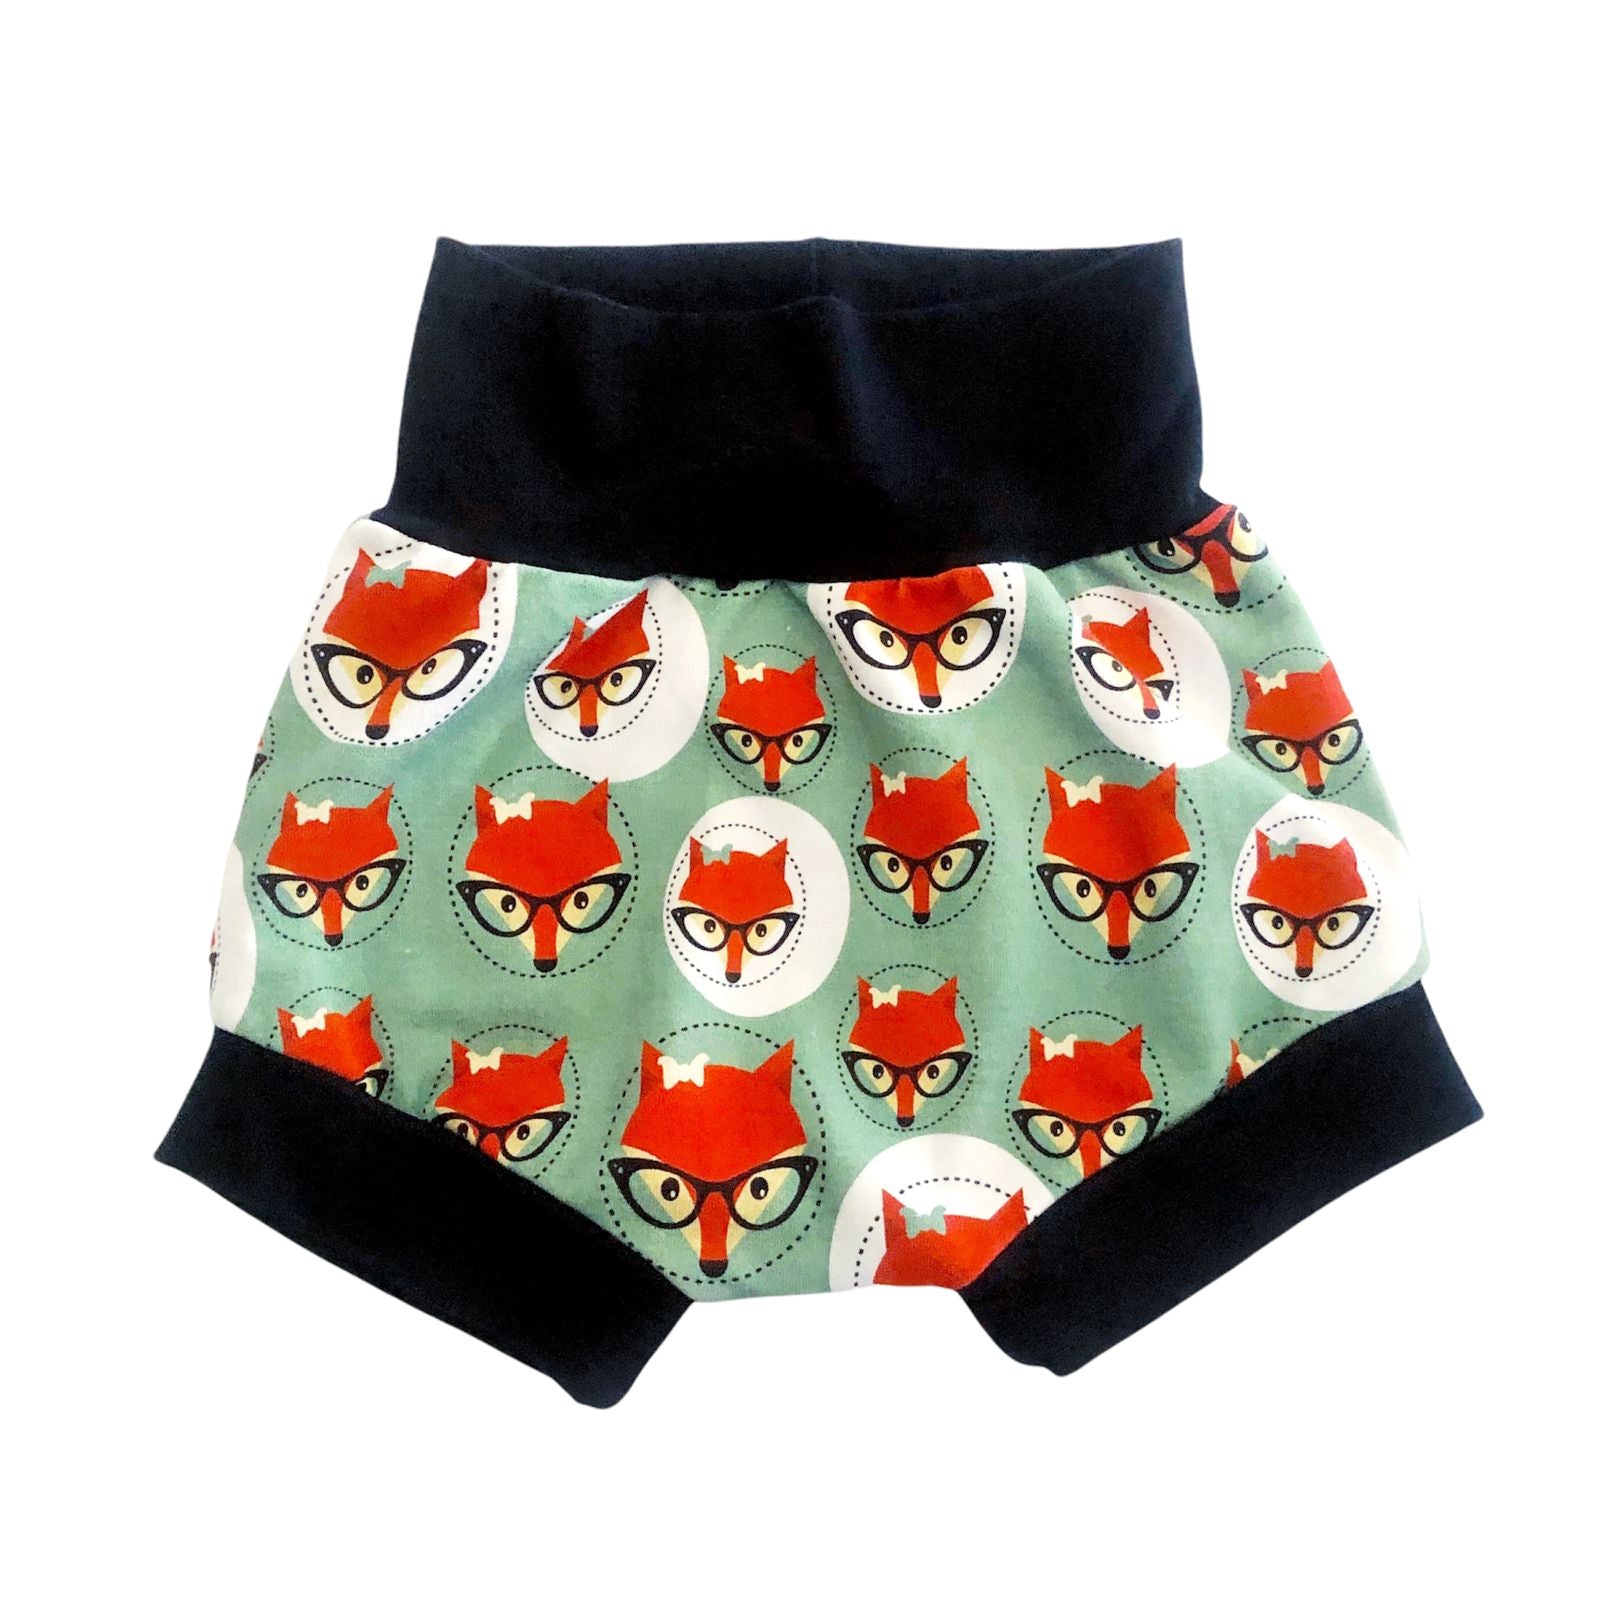 Fox harem shorts